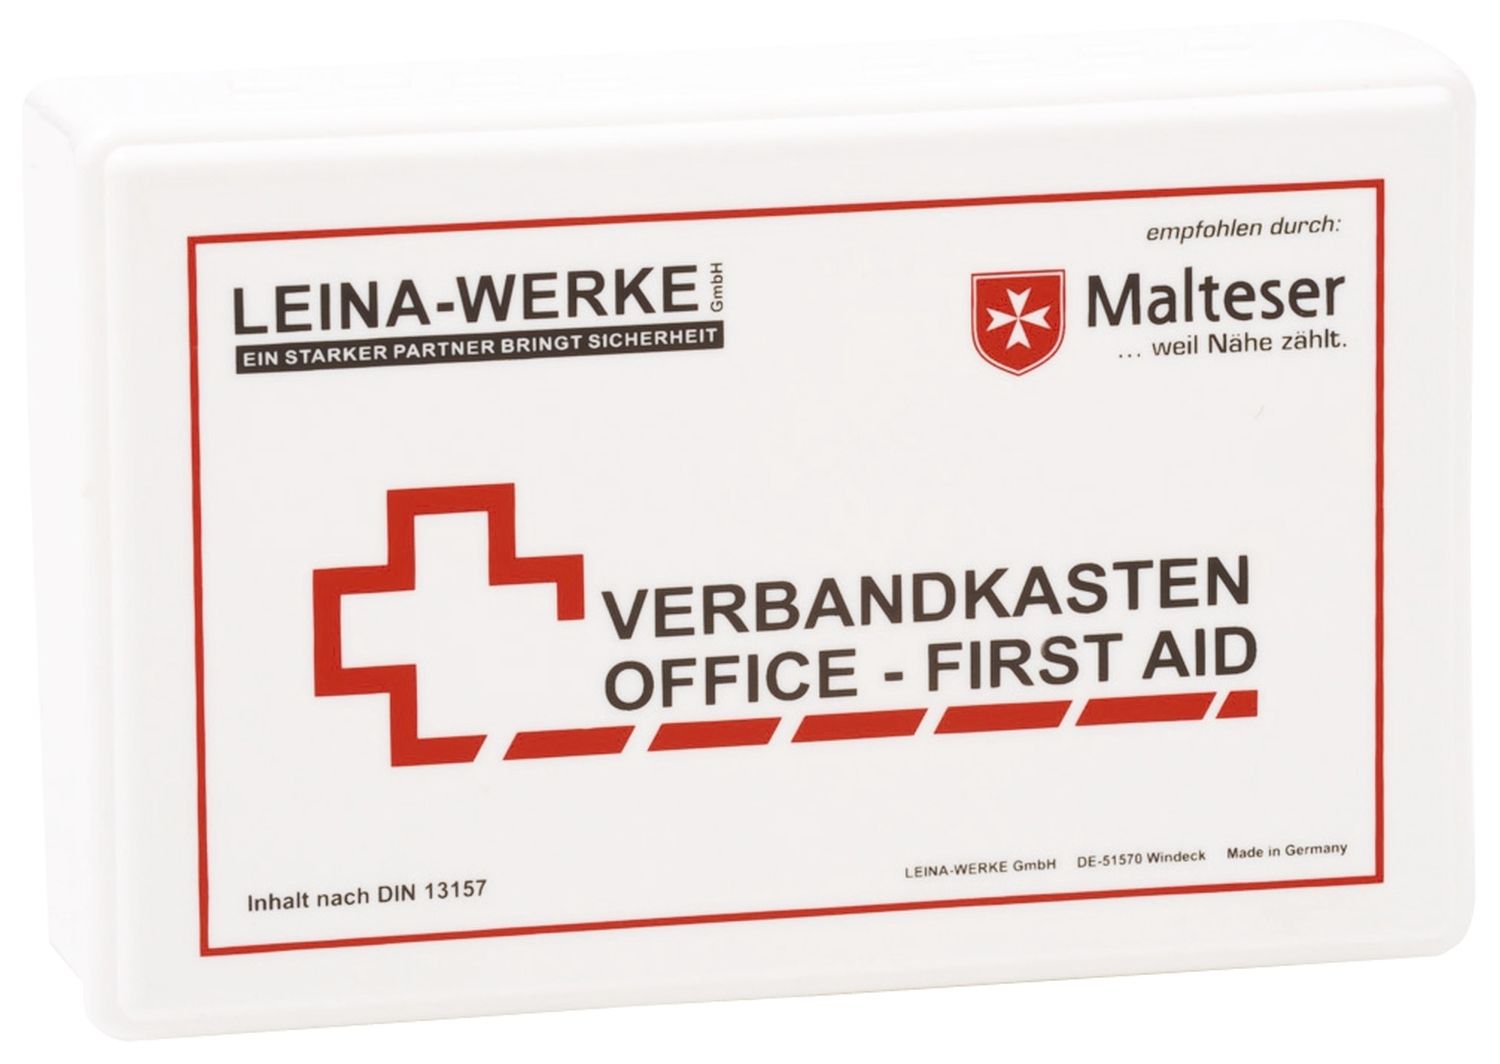 Betriebsverbandkasten nach DIN 13157 Office-First Aid Leina-Werke 20007, inkl. Wandhalterung, Kunststoff